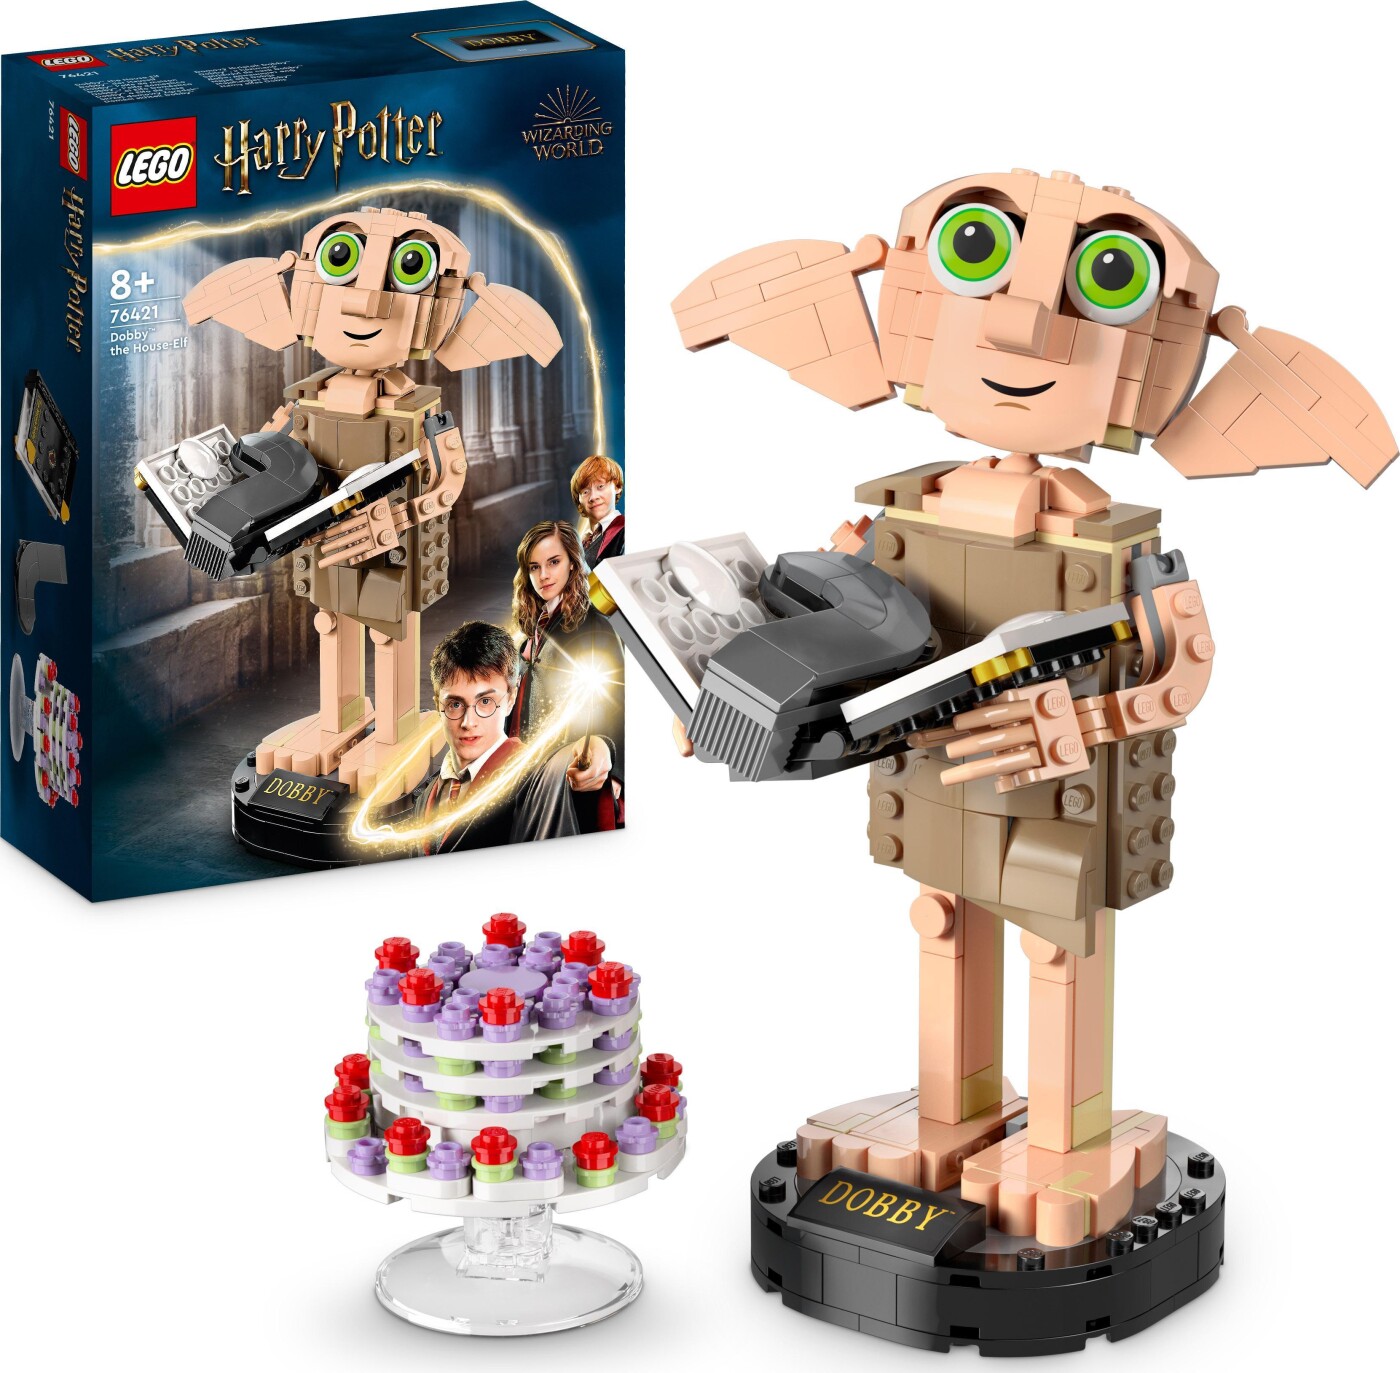 Billede af Lego Harry Potter - Dobby Figur - 76421 hos Gucca.dk